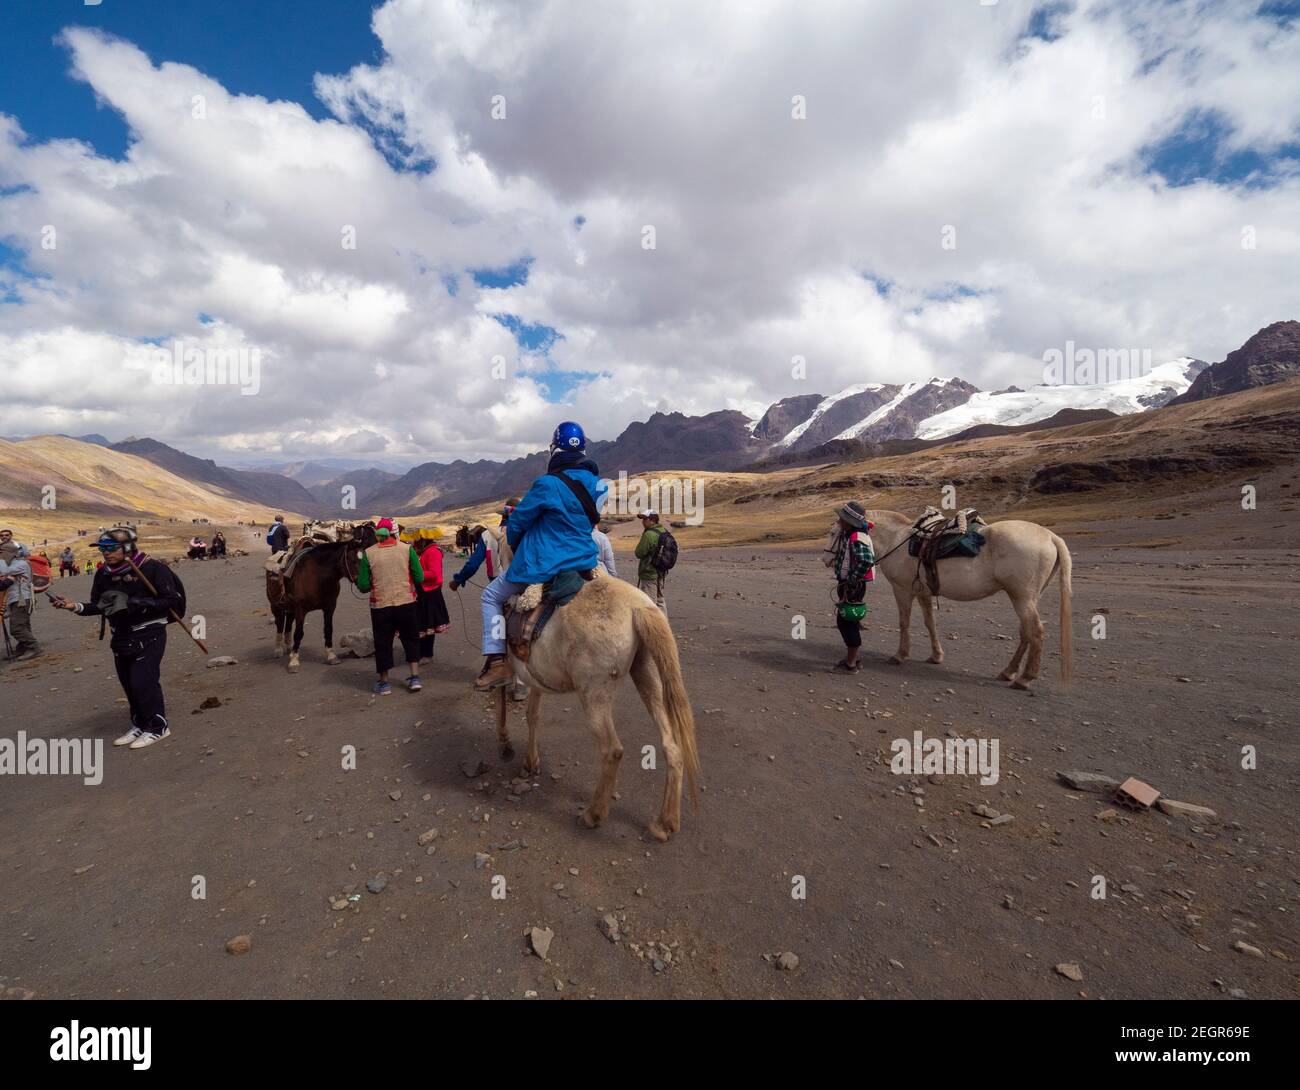 Perù, Vinicunca - 1 ottobre 2019 - cavalli, turisti e locali sulle montagne delle Ande in Perù, neve montagna in lontananza Foto Stock